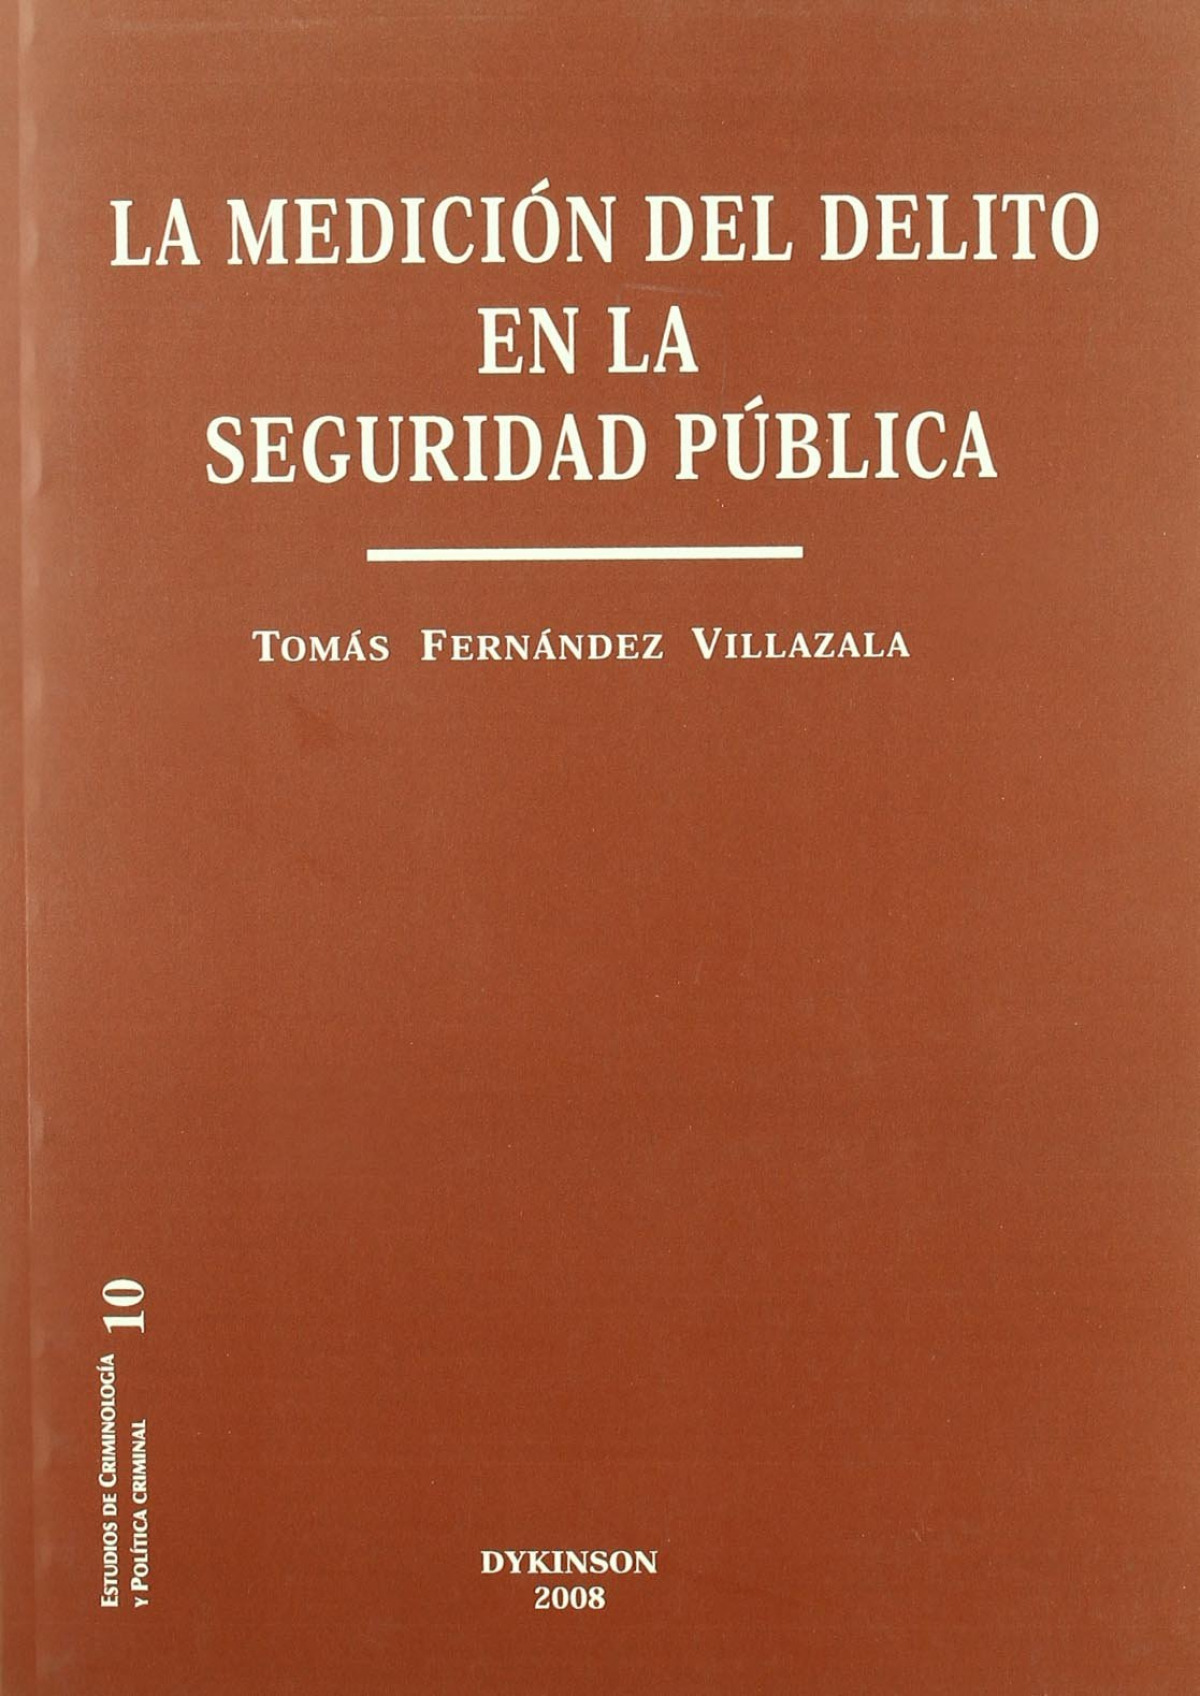 La medicion del delito en la seguridad publica - Fernandez Villazala, Tomas